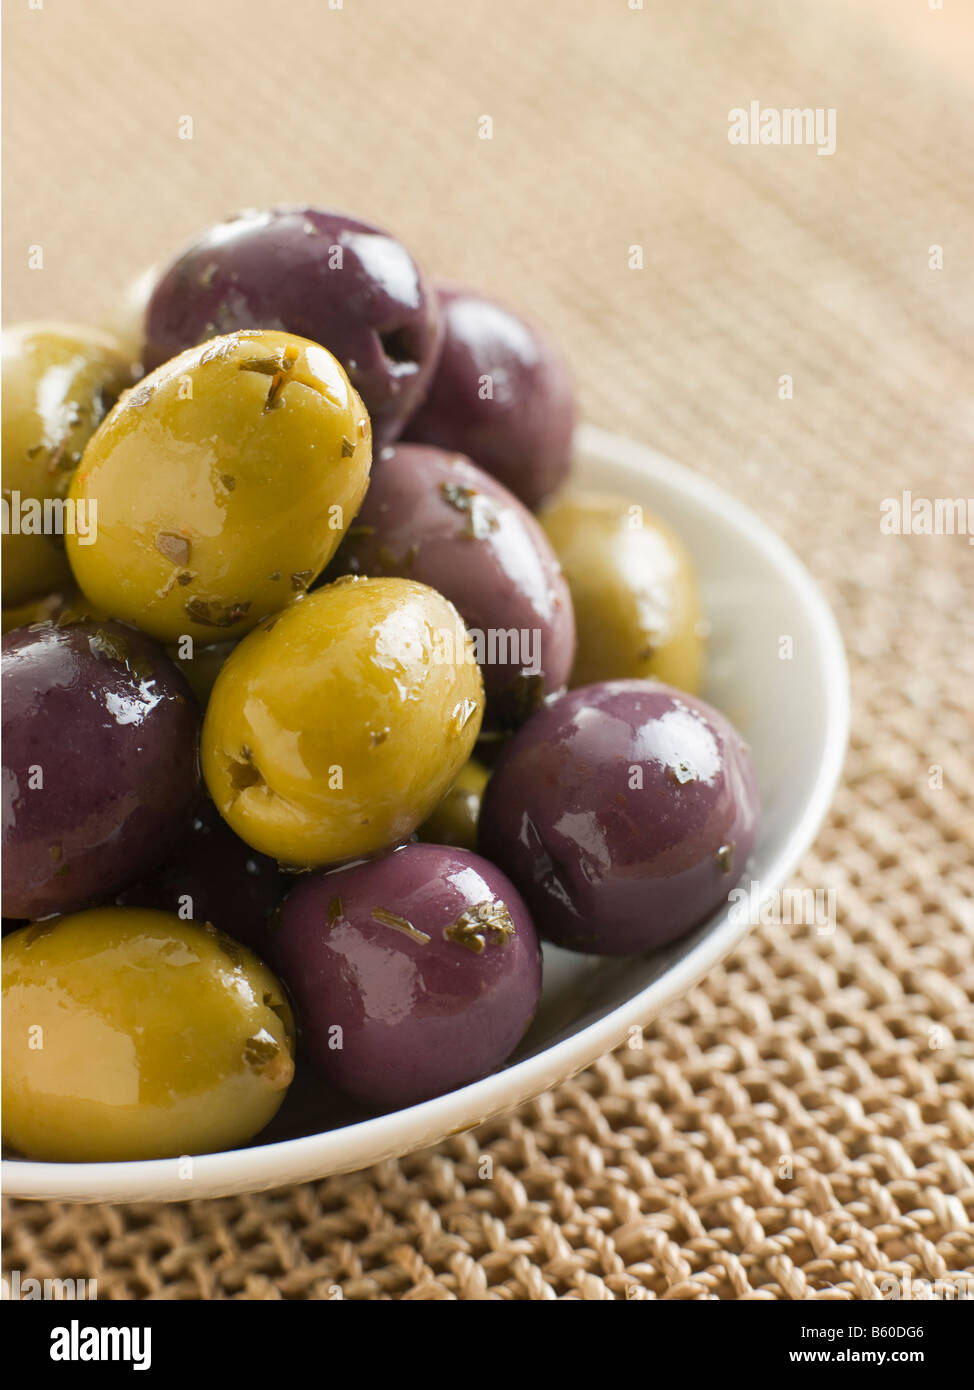 Dish of marinated Olives Stock Photo